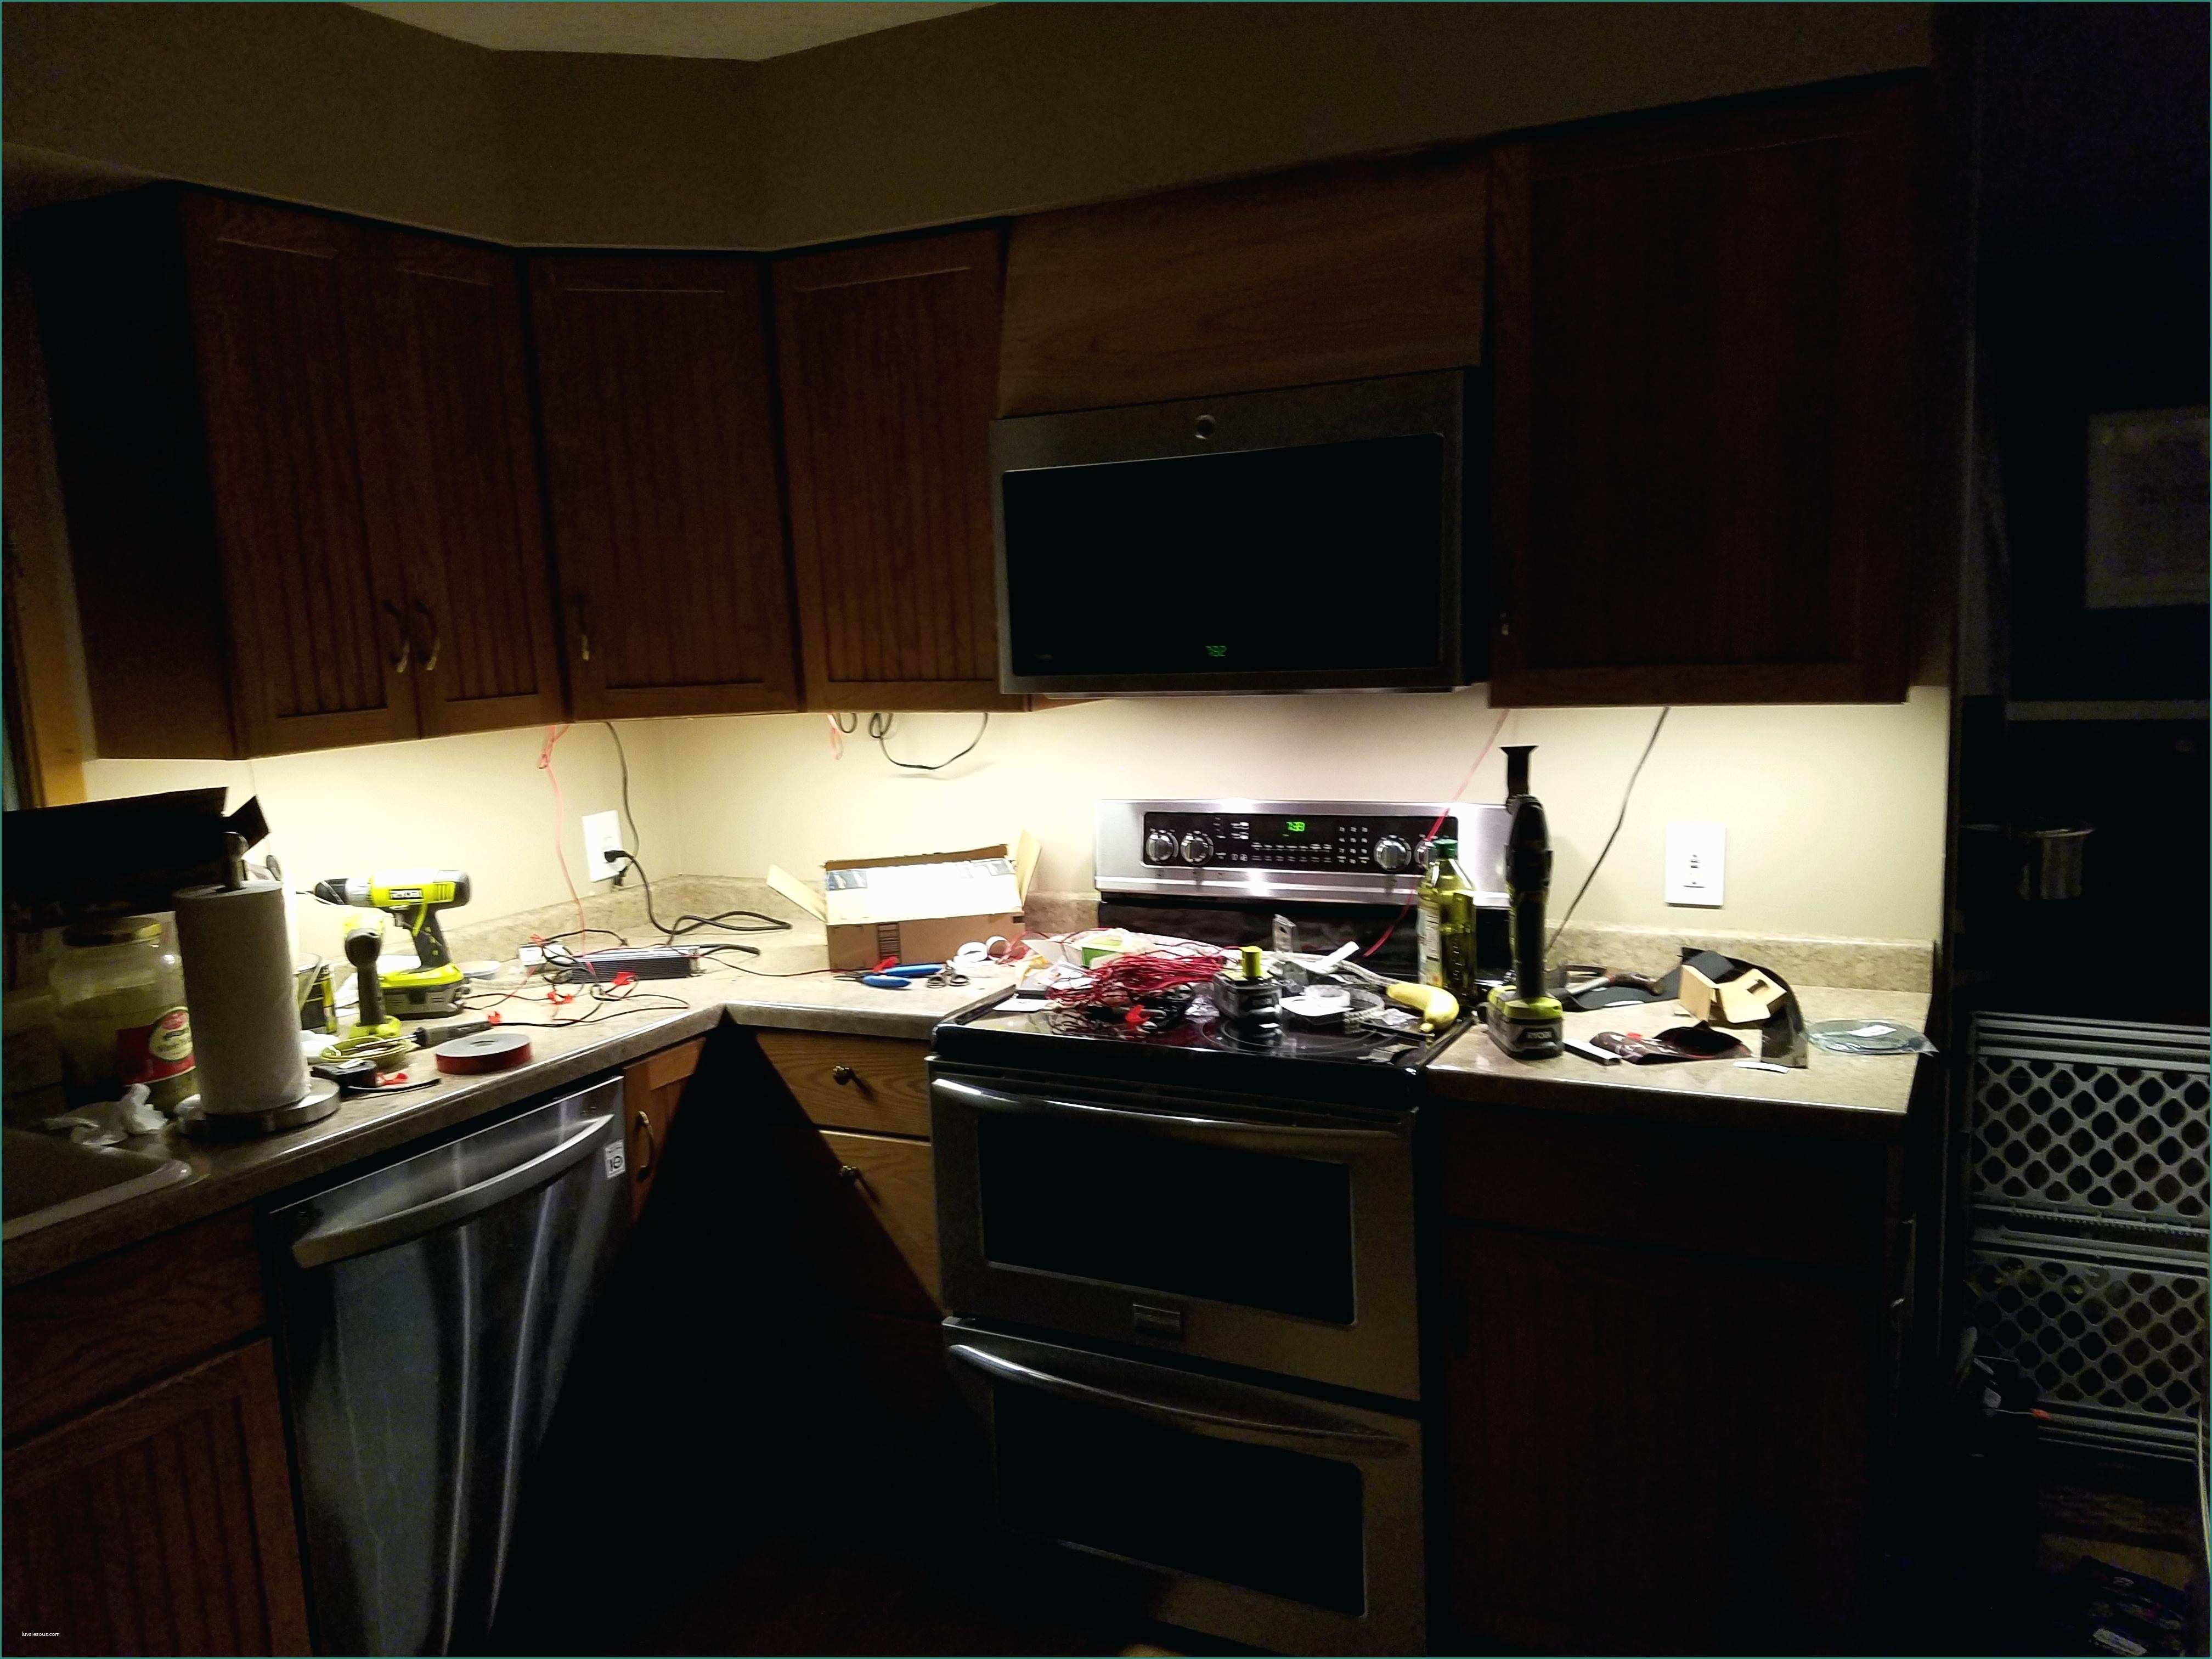 Linear assicurazioni Recensioni E Plug In Under Cabinet Lighting Cyron Led Light Bar Kit Kitchen Con